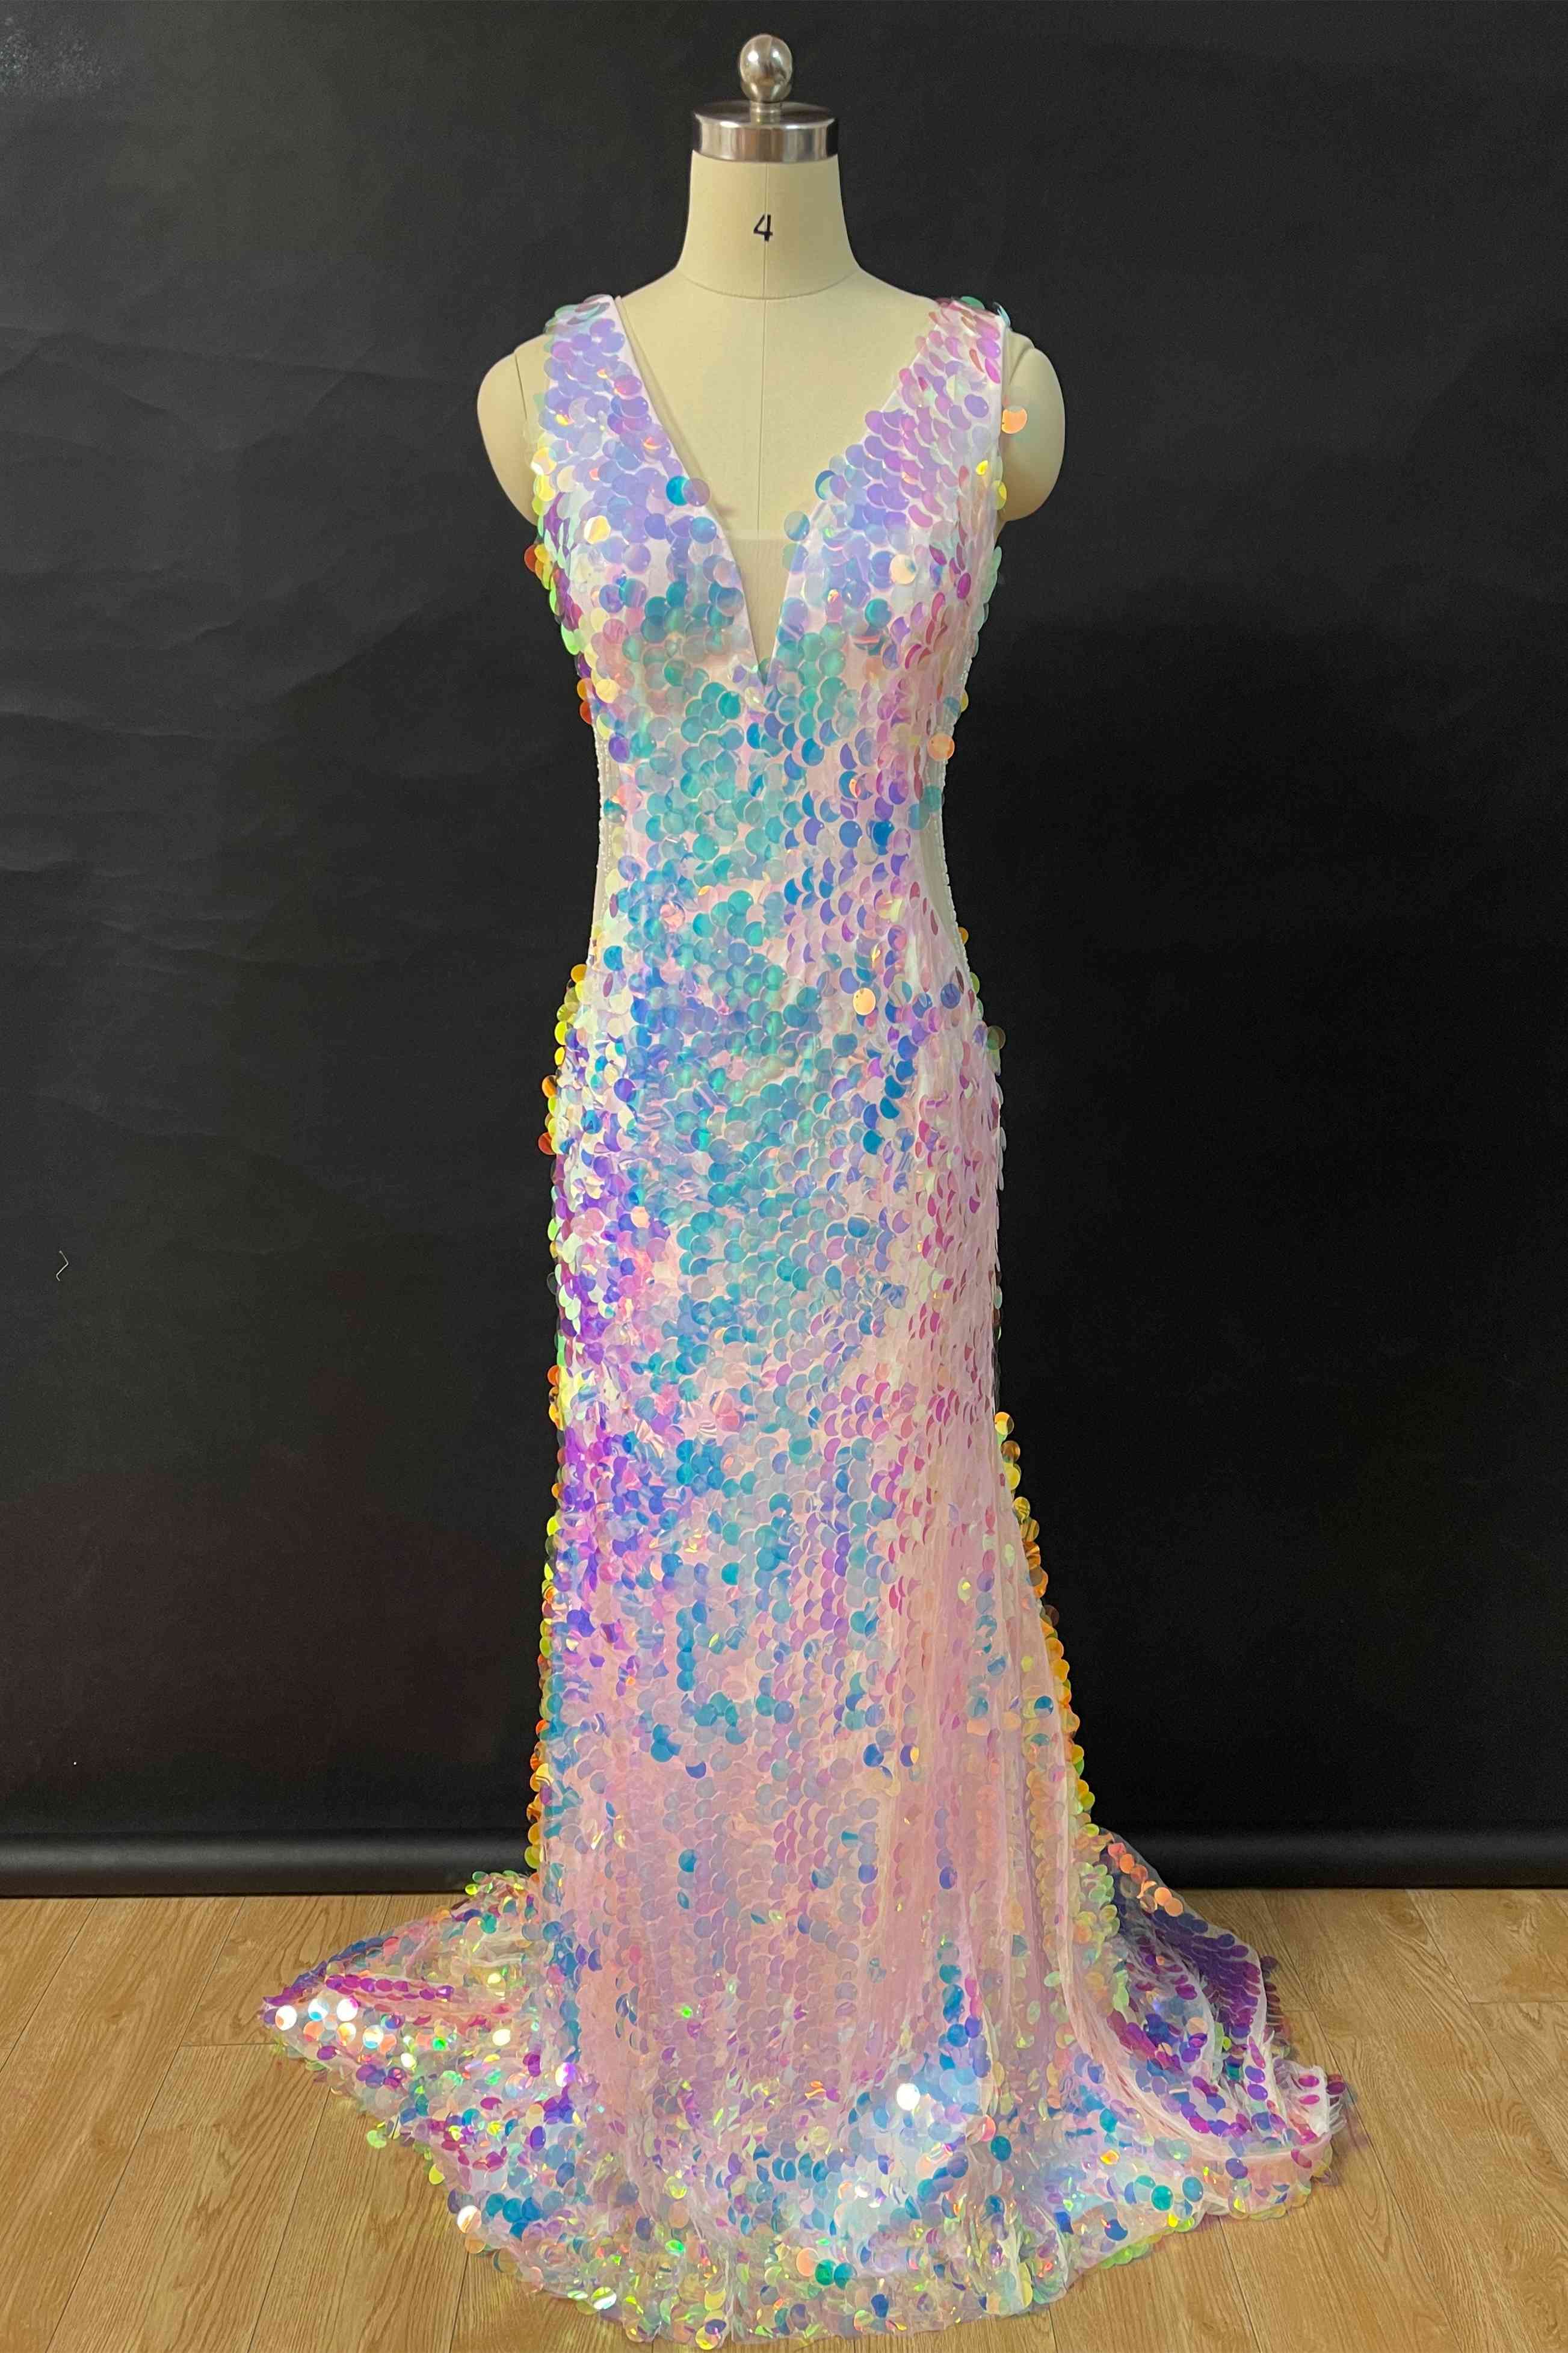 Mermaid V-Neck Sequined Long Prom Dress